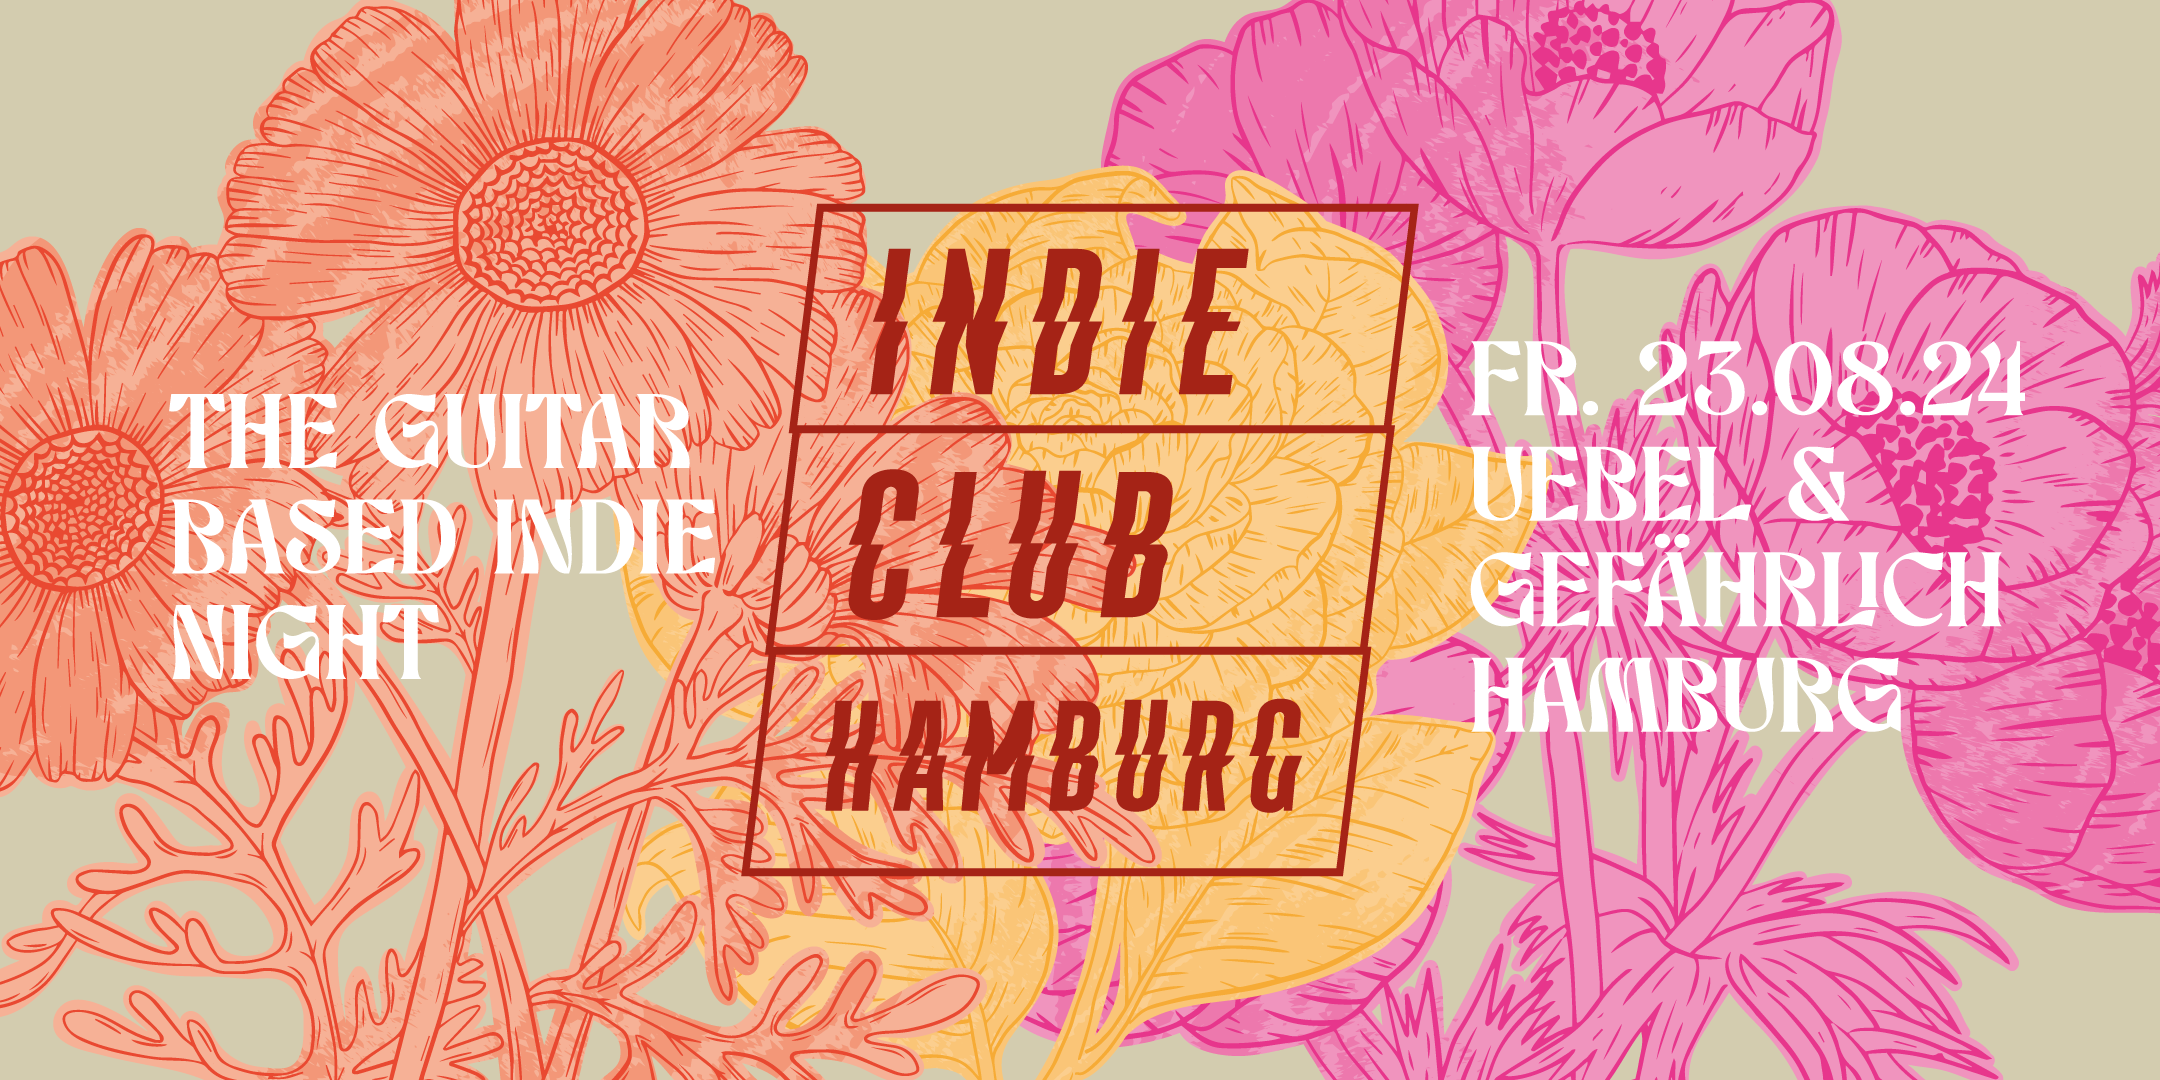 Indie Club Hamburg • Uebel & Gefährlich • Hamburg - Página frontal